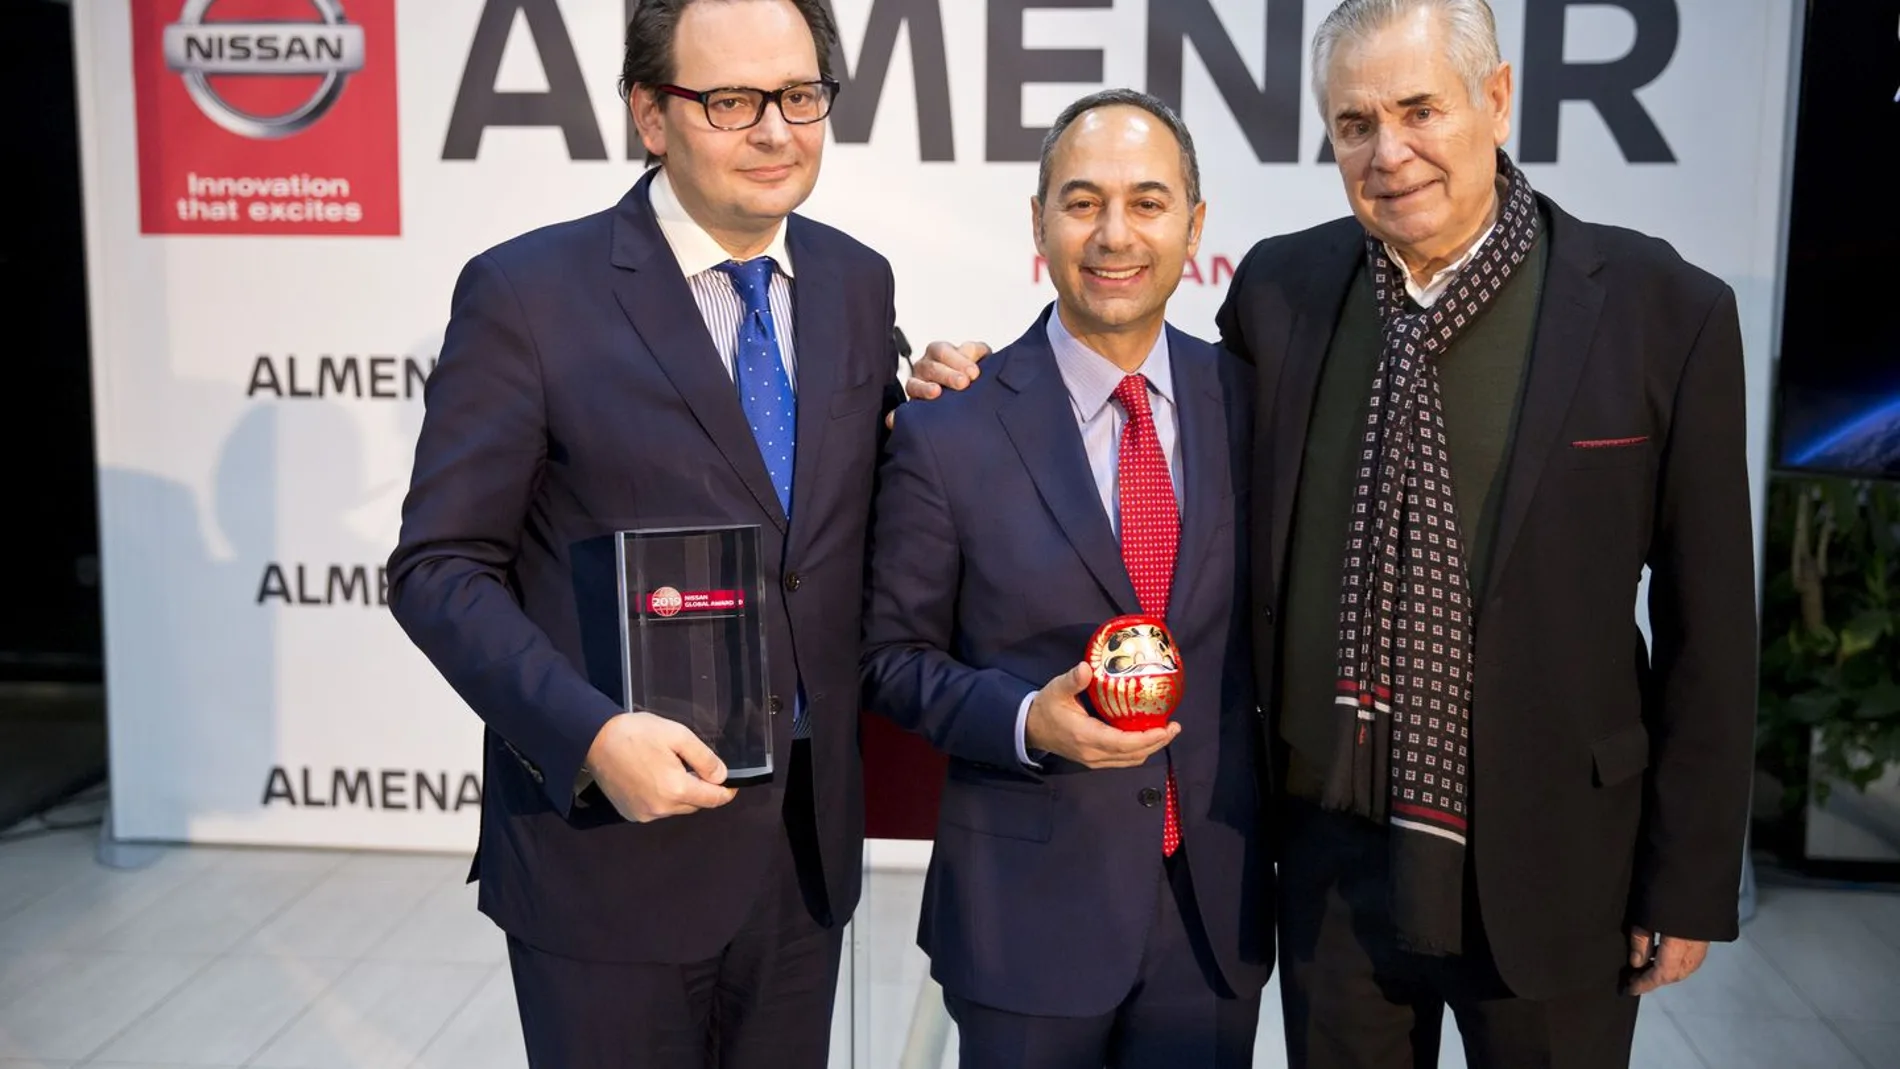 Sergio Torregrosa, Marco Marco Toro y Enrique Torregrosa con sus respectivos premios